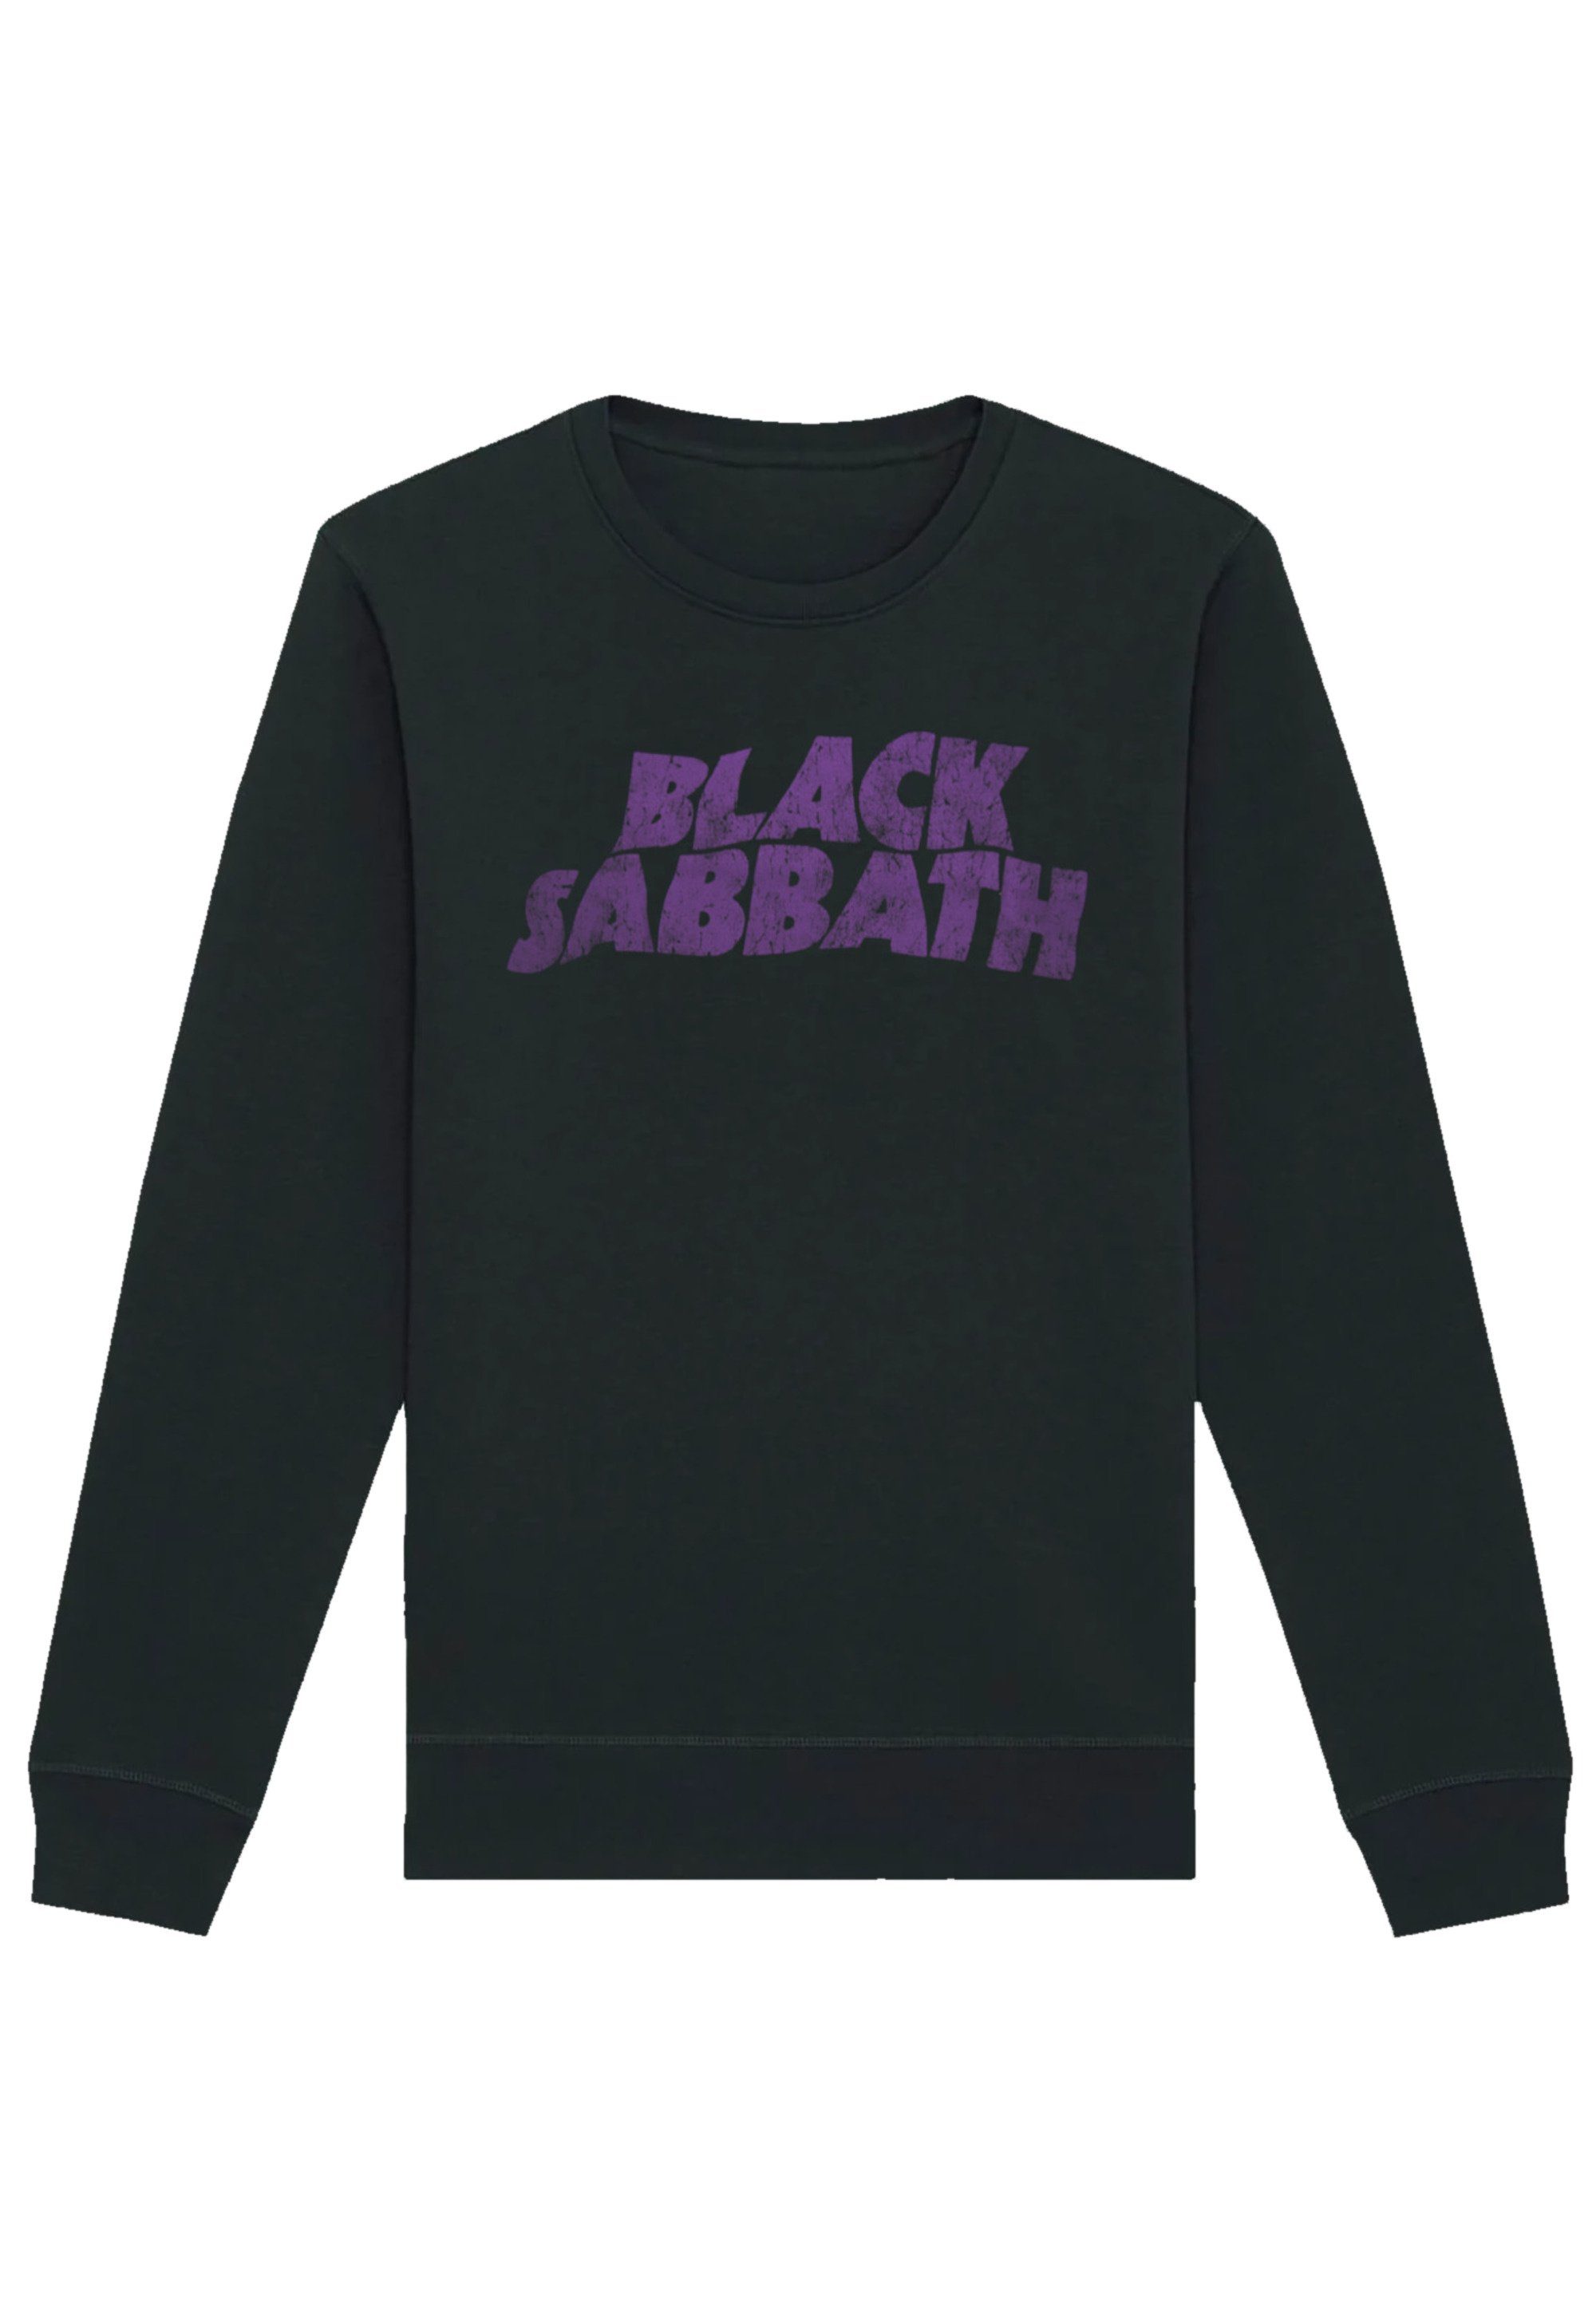 Black Logo Distressed Sweatshirt Wavy Black Print Sabbath F4NT4STIC